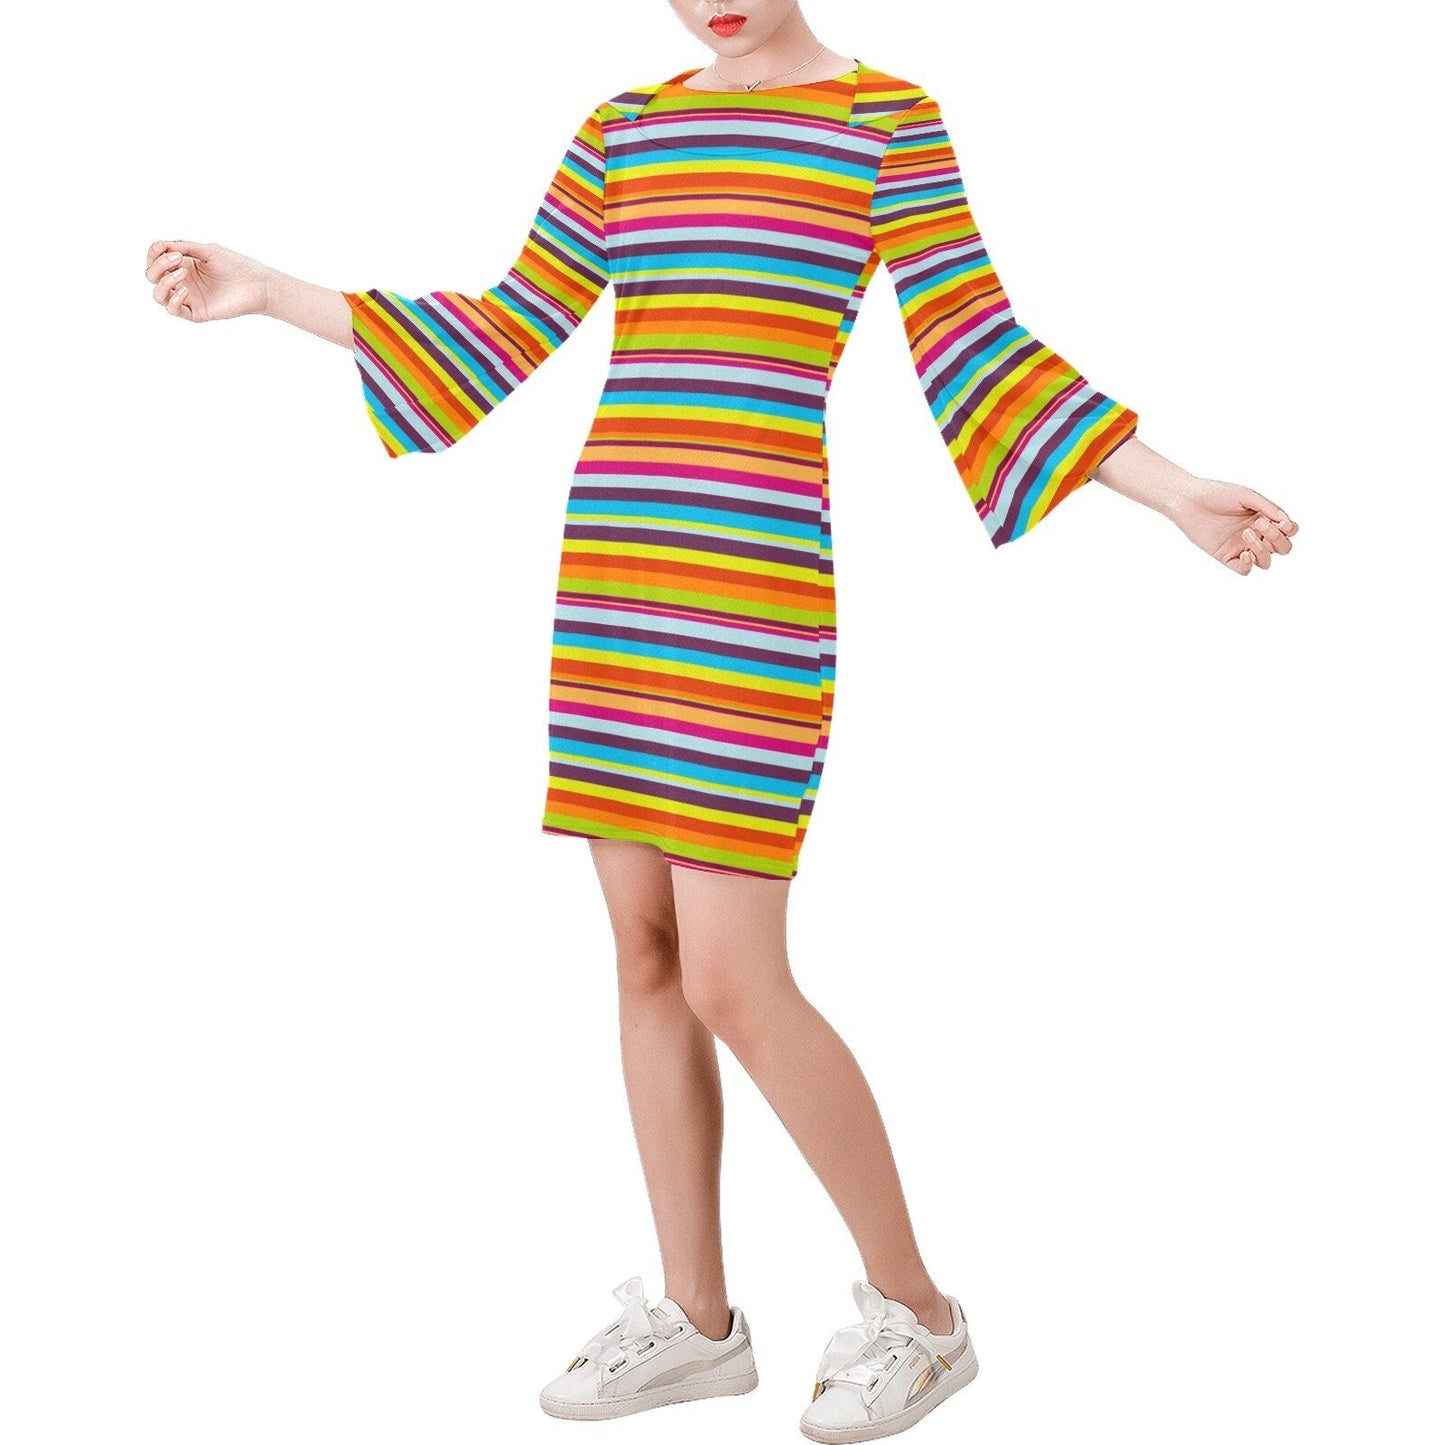 Streifenkleid, Retro-Kleid, Retro-Kleid, Kleid im 70er-Jahre-Stil, Kleid mit Glockenärmeln, mehrfarbiges Streifenkleid, Hippie-Kleid, Etuikleid, Vintage-inspiriert